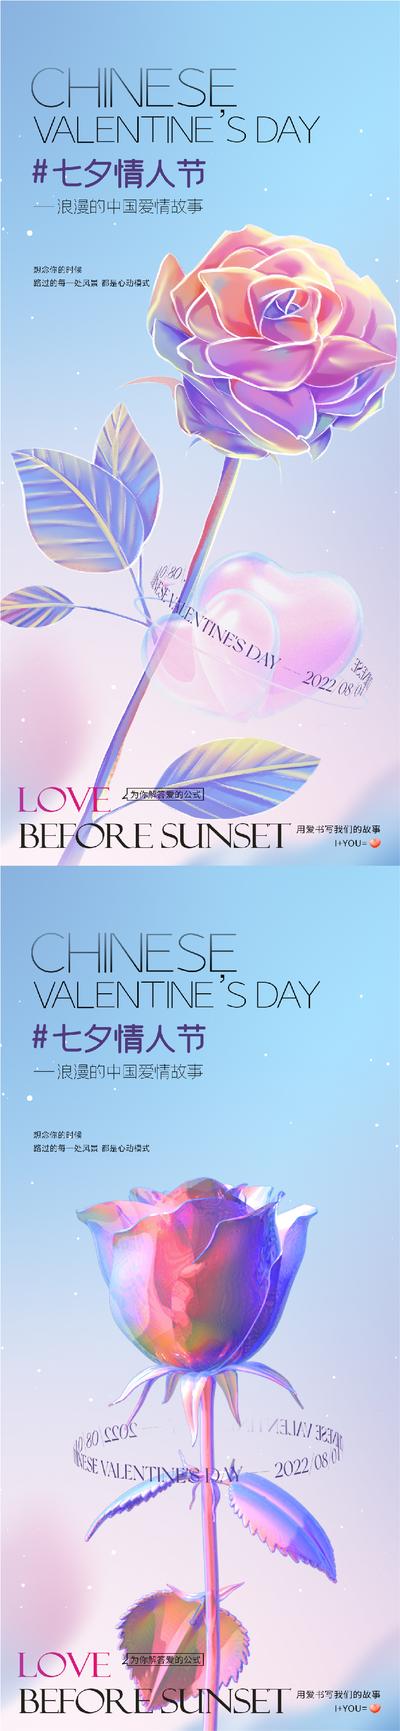 南门网 海报 中国传统节日 七夕 情人节 玫瑰花 酸性